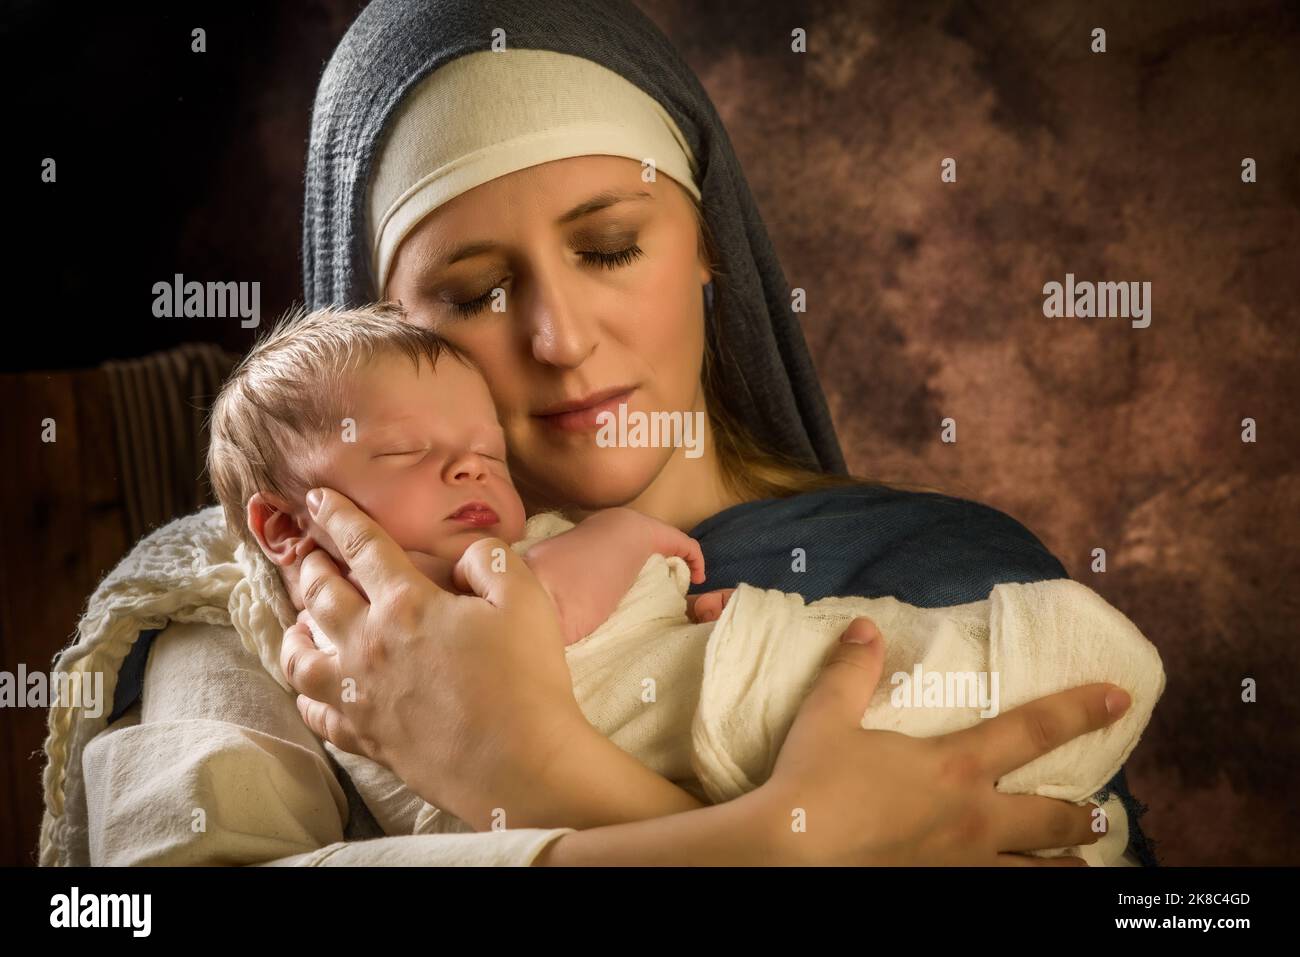 Recreación en vivo escena del belén de Navidad de la verdadera madre de un niño de 8 días de edad jugando a la Virgen María y el bebé Jesús Foto de stock